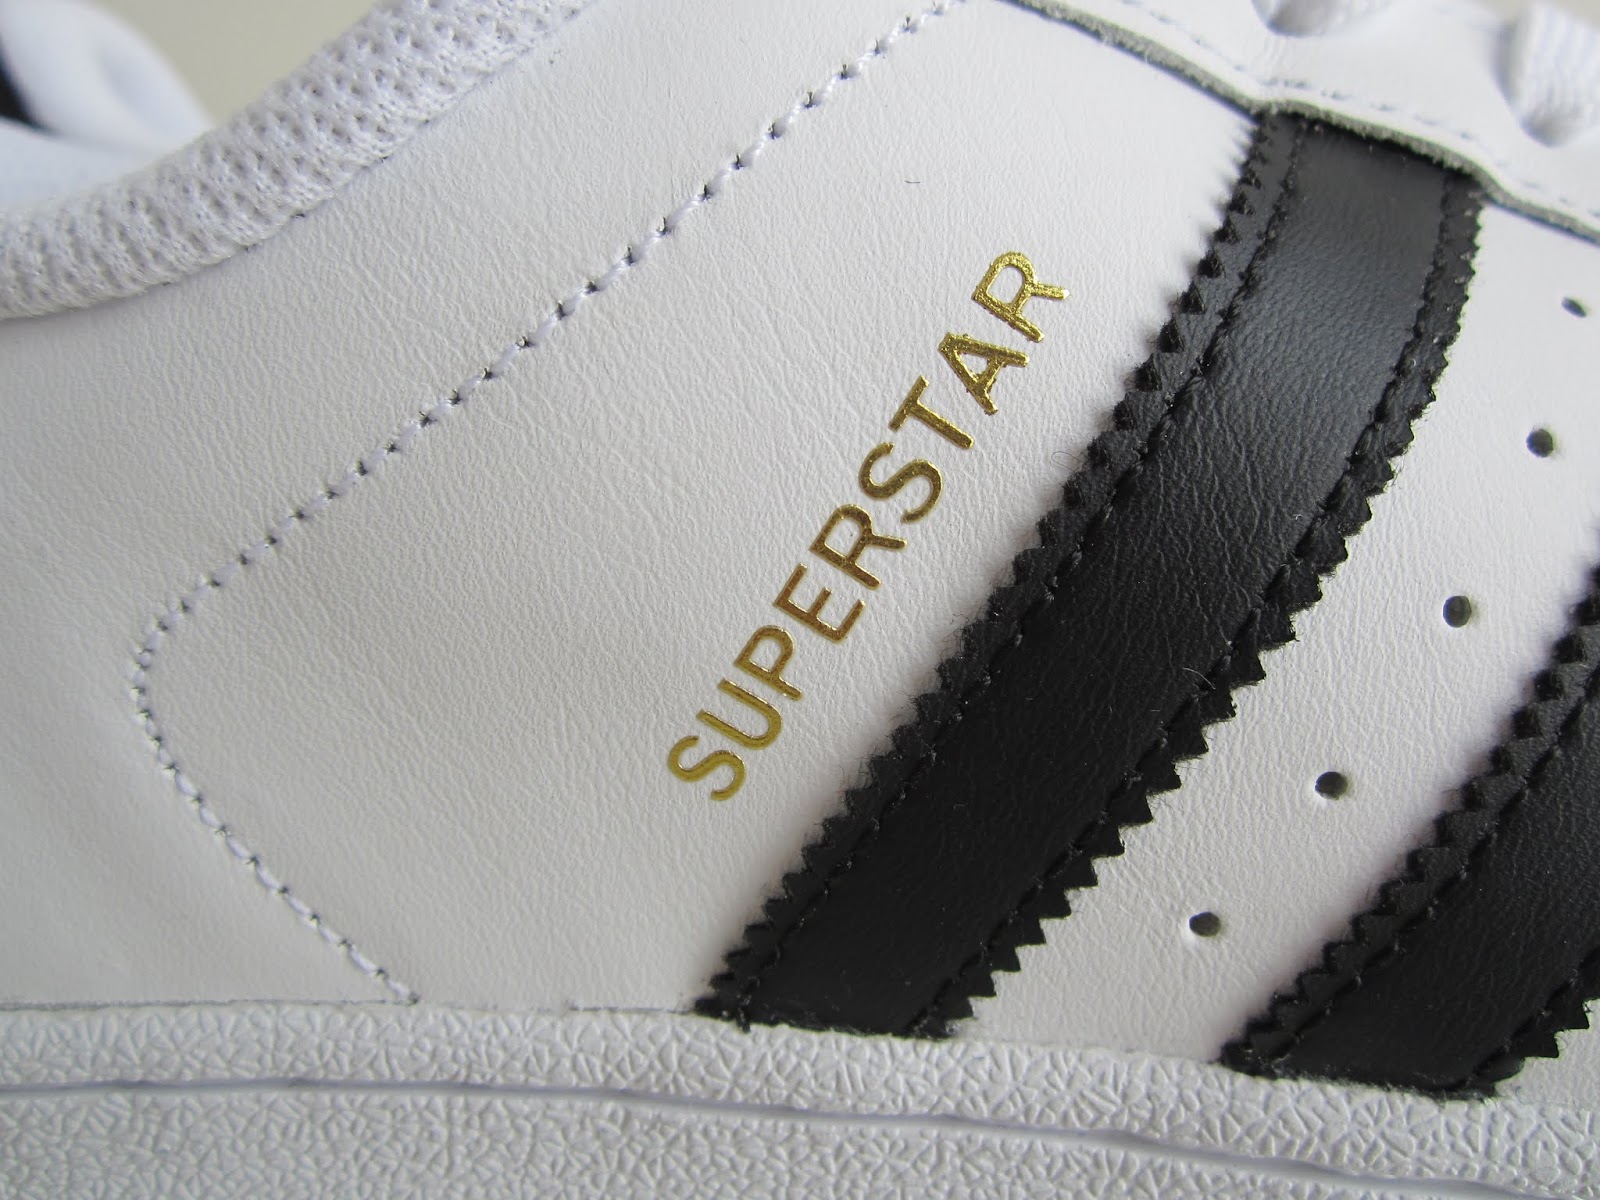 Piper2381: Adidas Superstar